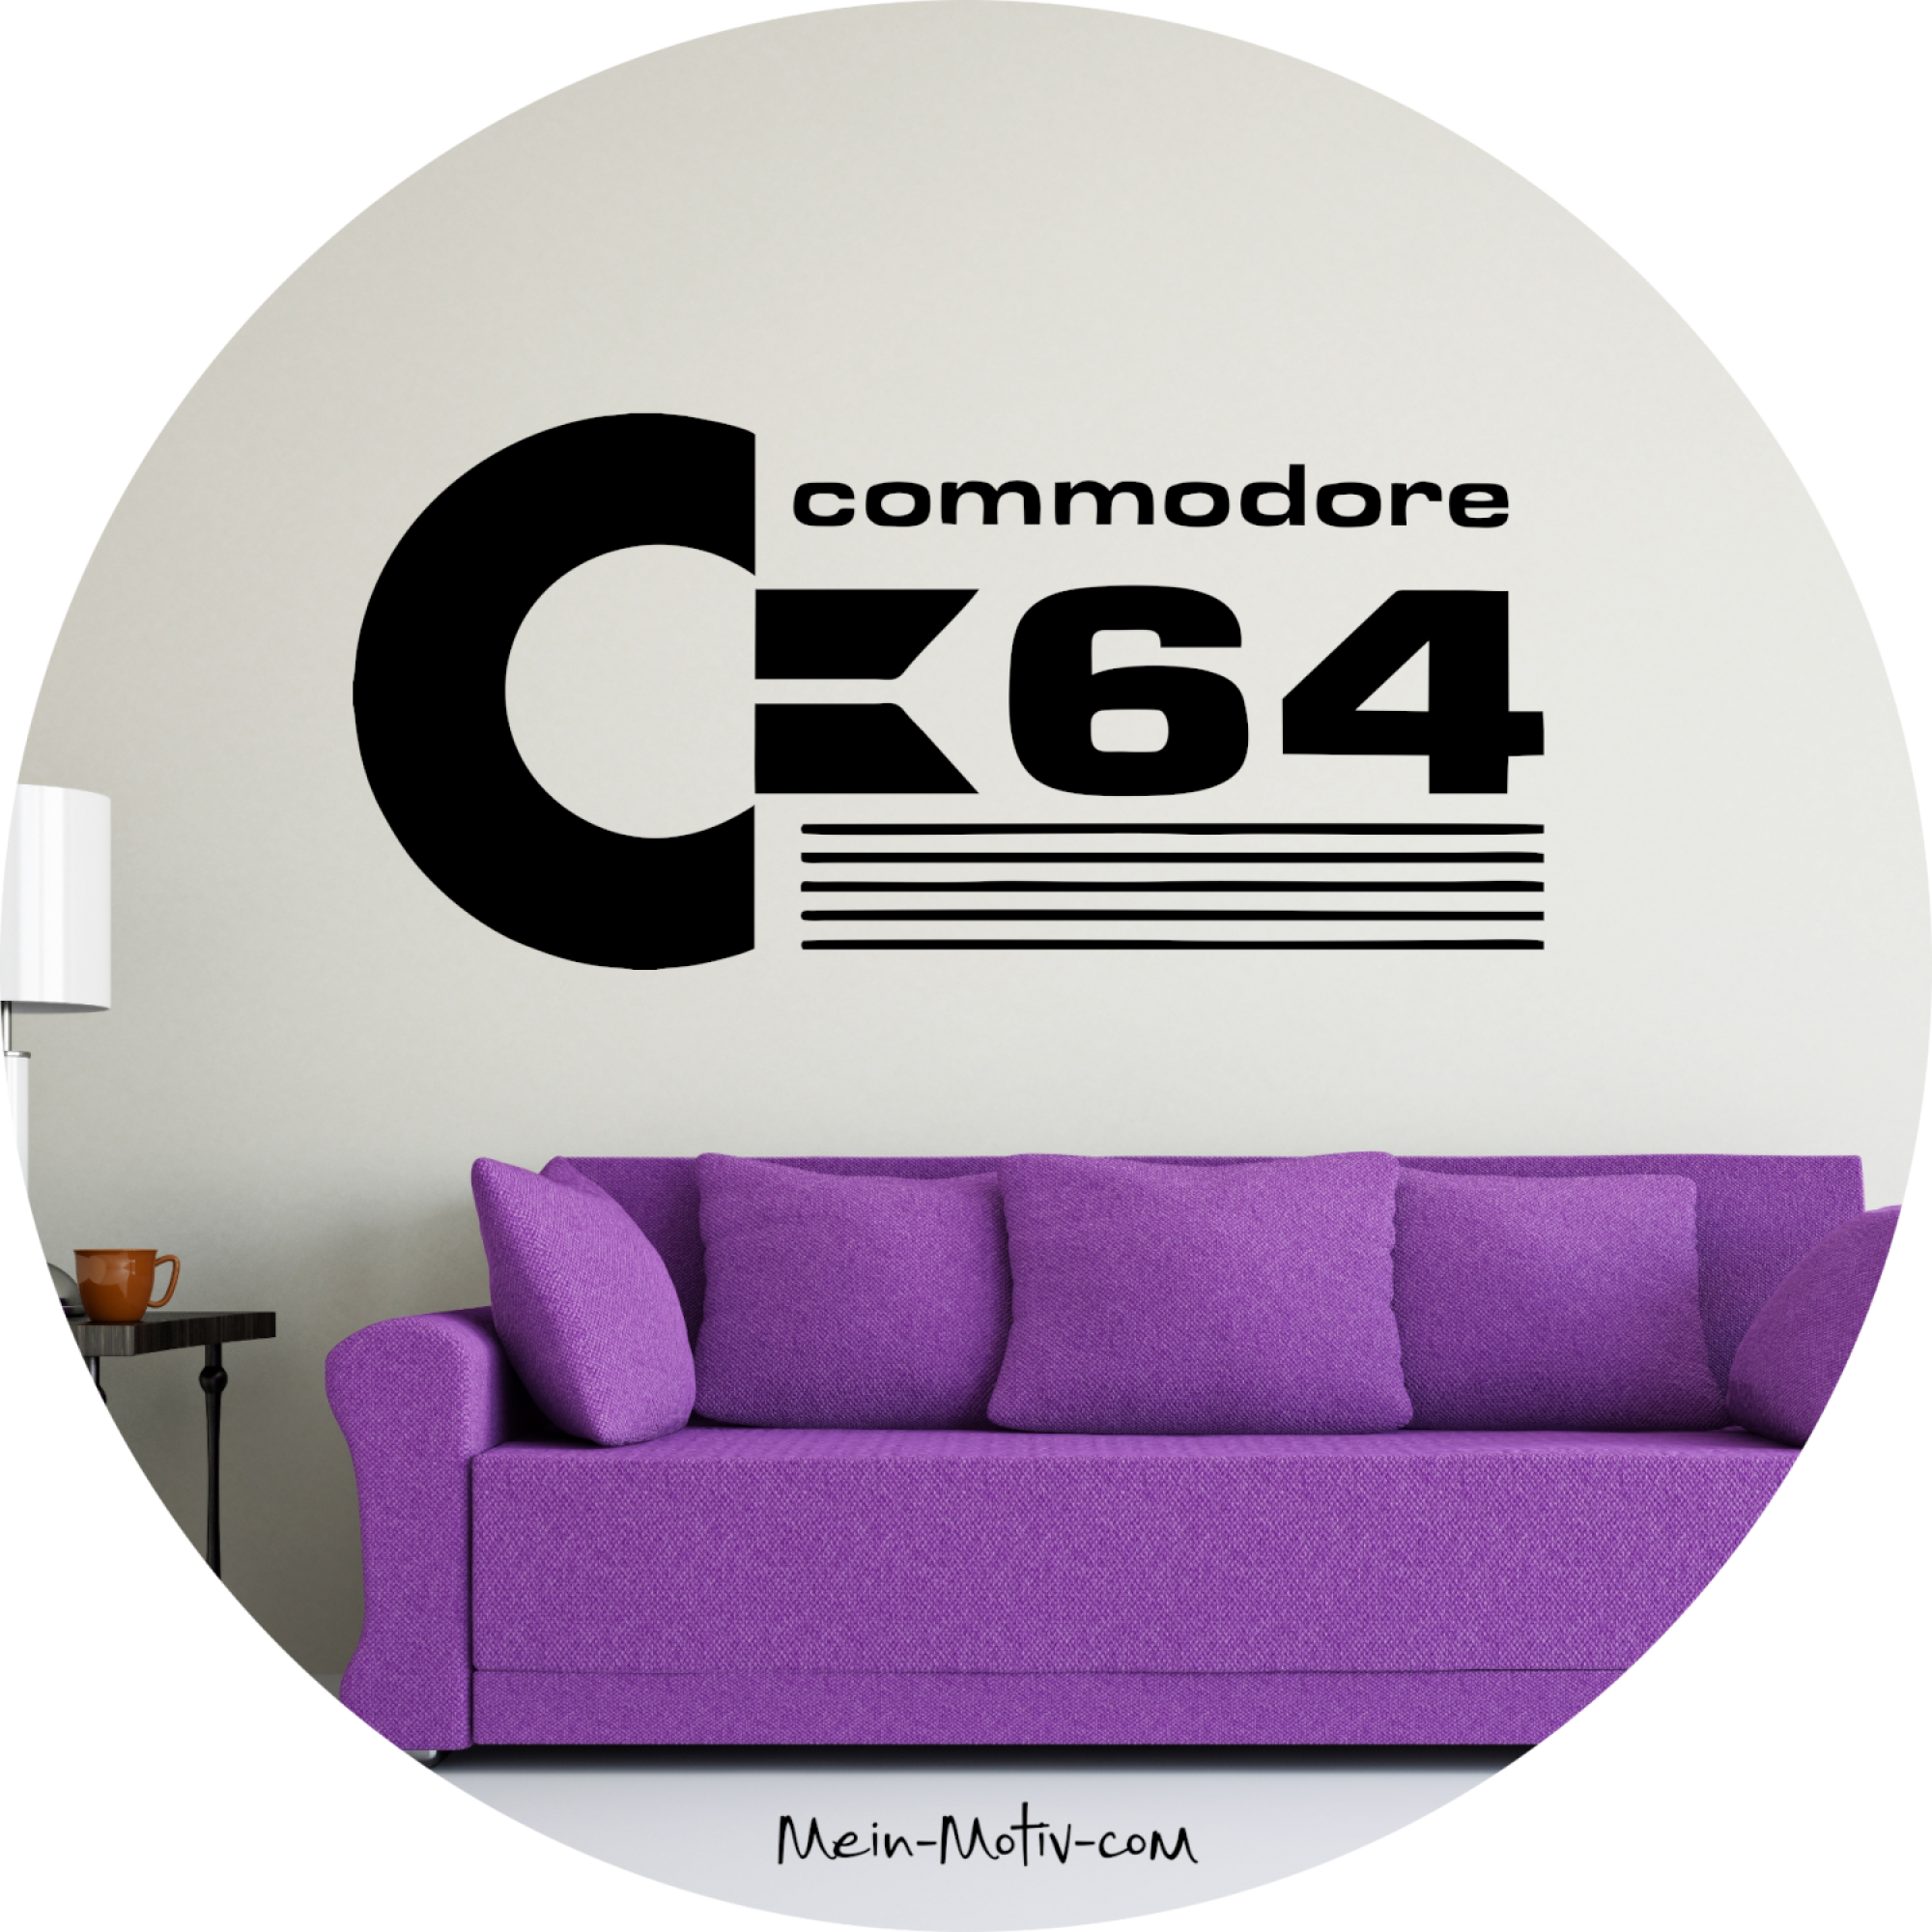 Wandtattoo Commodore C64